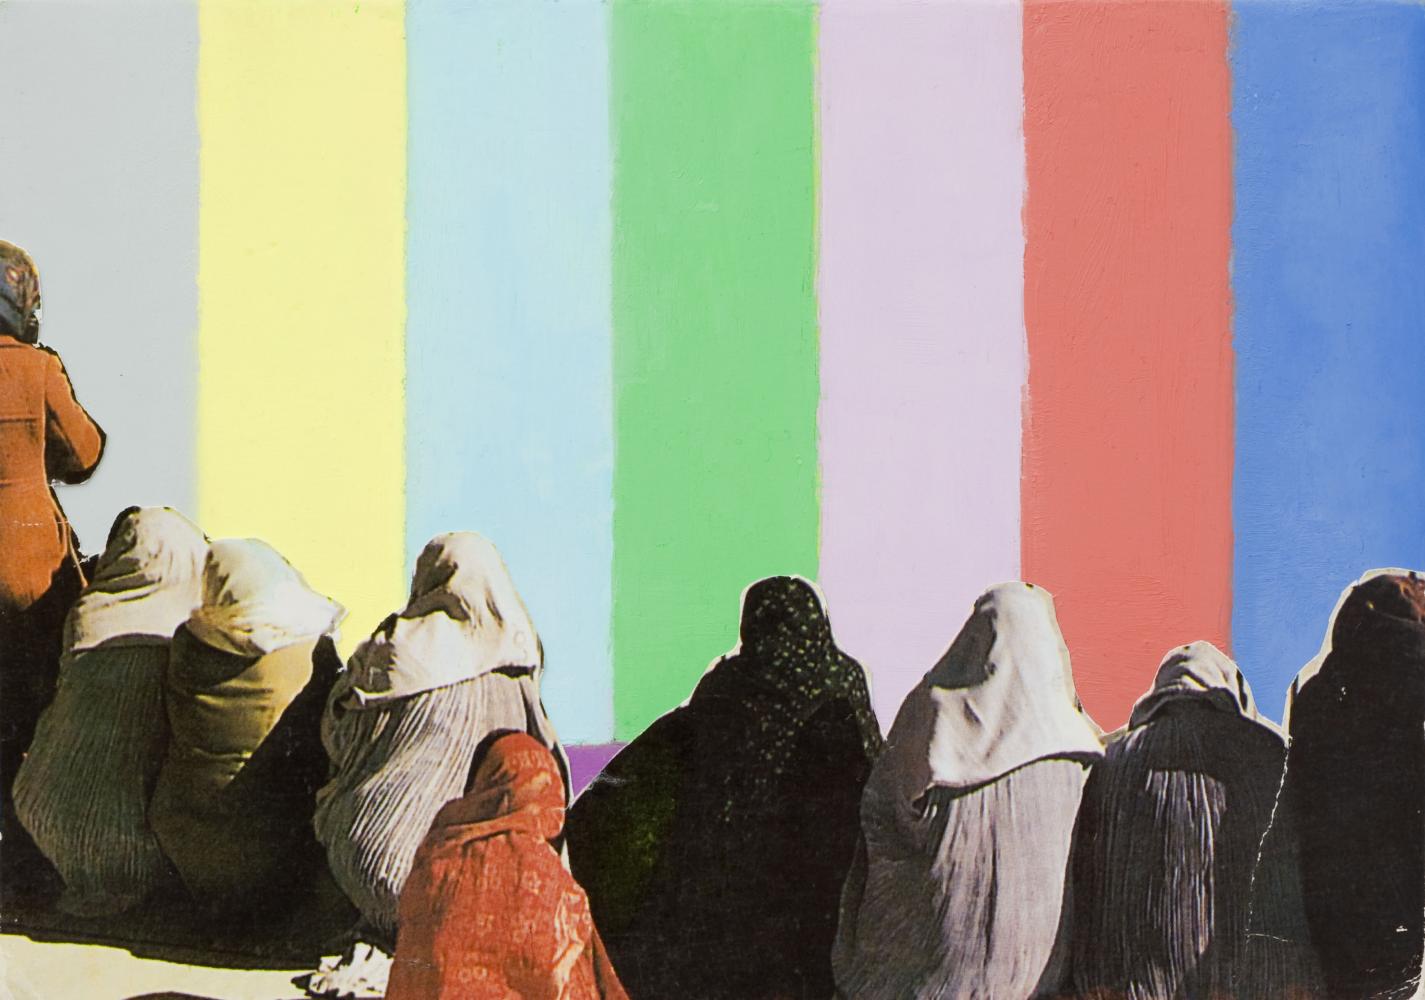 Francis Alÿs, "Untitled (Color Bar)", 2011/12